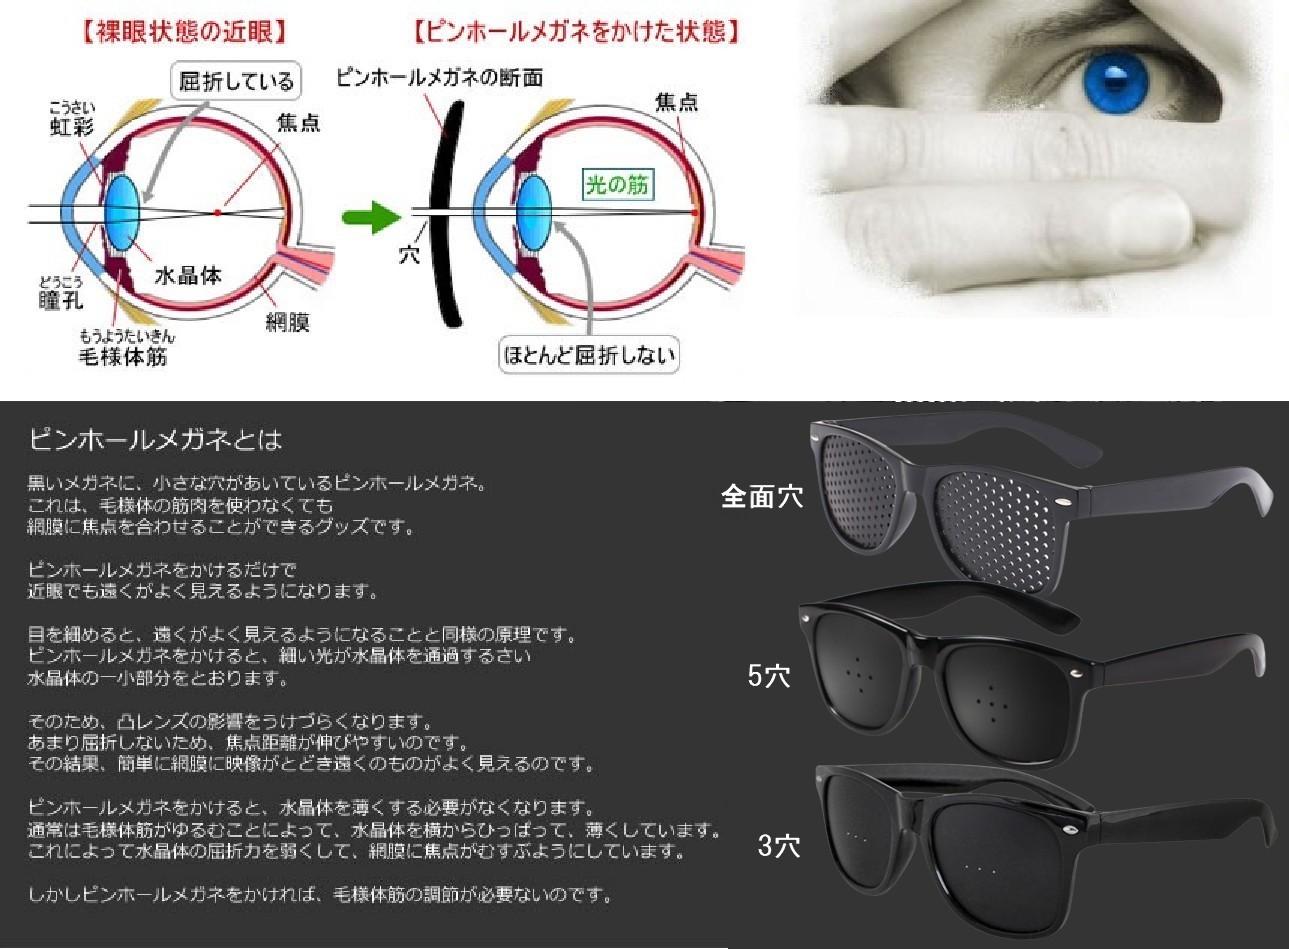 新発売】ピンホールメガネ 5穴 視力回復トレーニング 遠近兼用ピンホールメガネ Pinhole Glasses  眼筋力アップ[定形外郵便、送料無料、代引不可] 疲れ目 リフレッシュ 眼鏡ケア用品